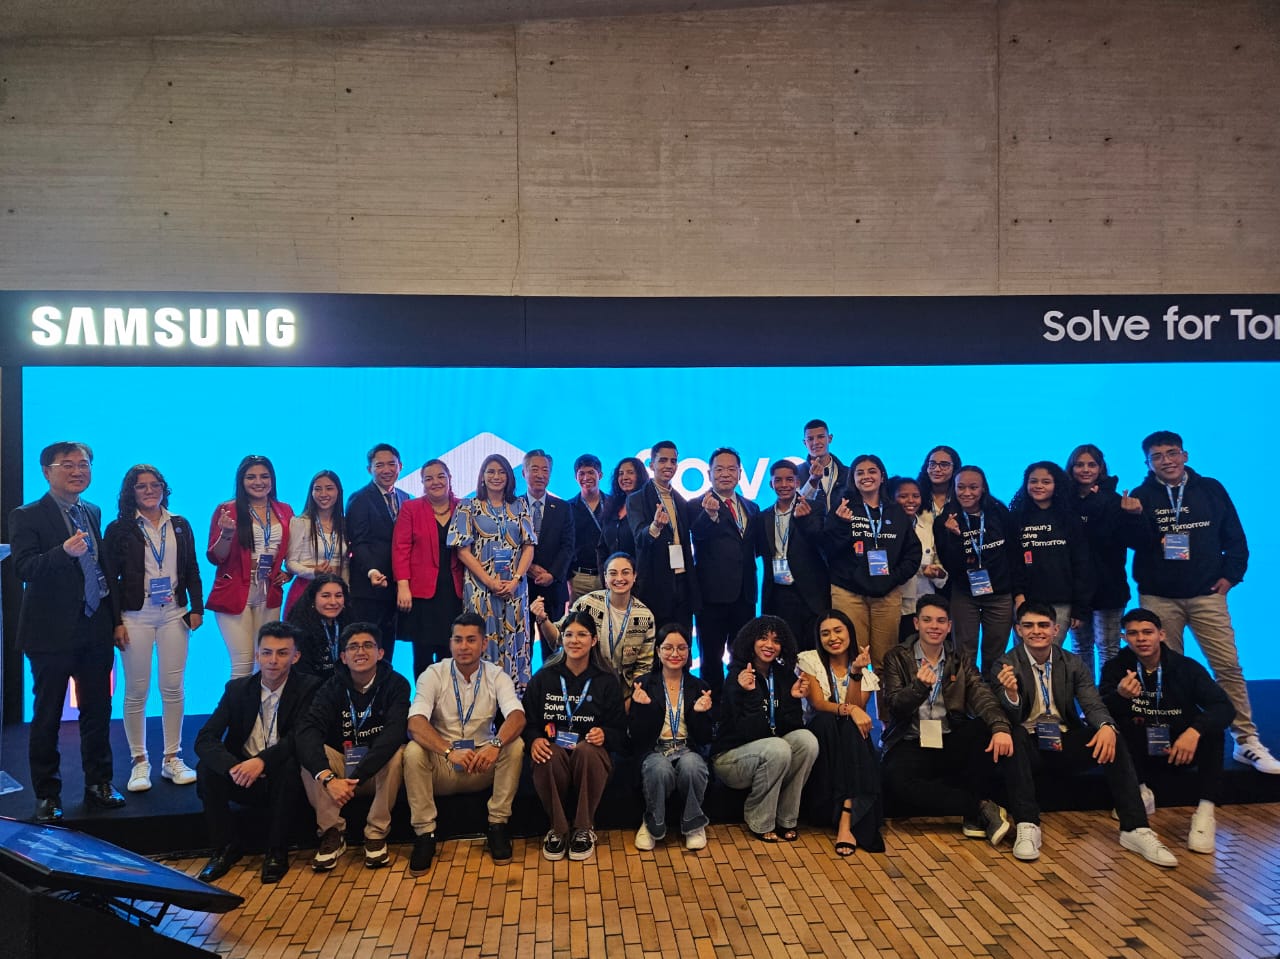 Solve for Tomorrow: programa de Samsung celebra 10 años en América Latina  con más de 300 mil estudiantes beneficiados